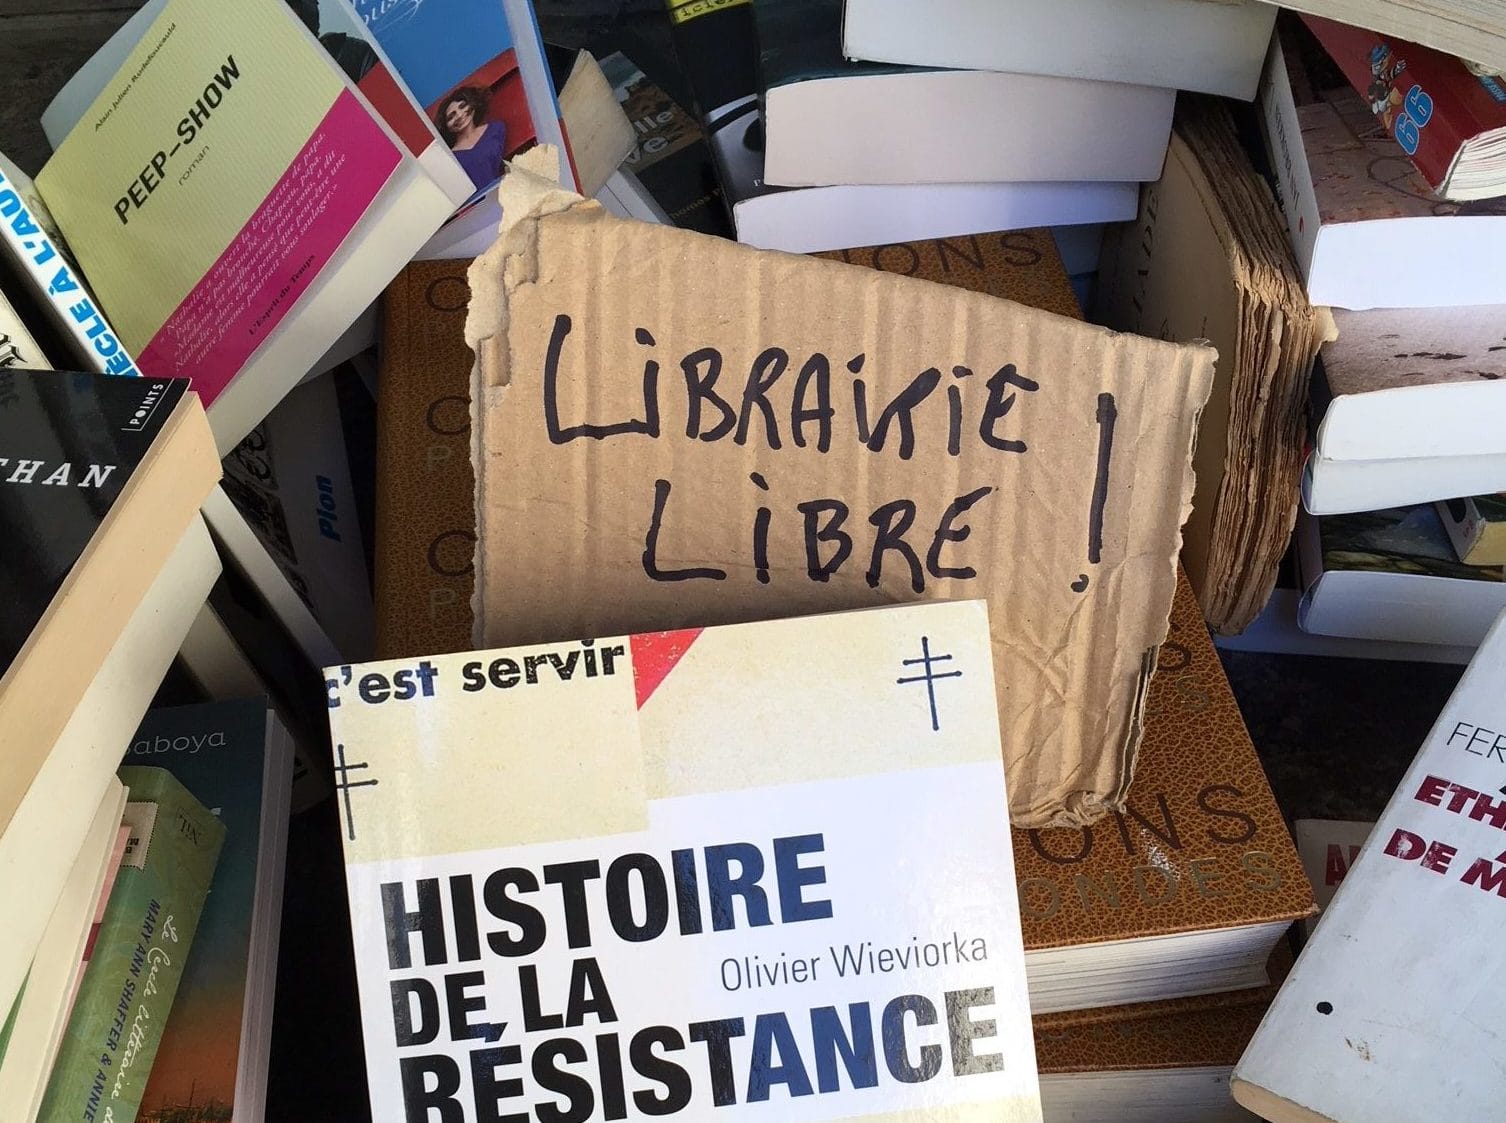 La bibliothèque de Neneuil sera reconstituée après la « bévue » de sa destruction